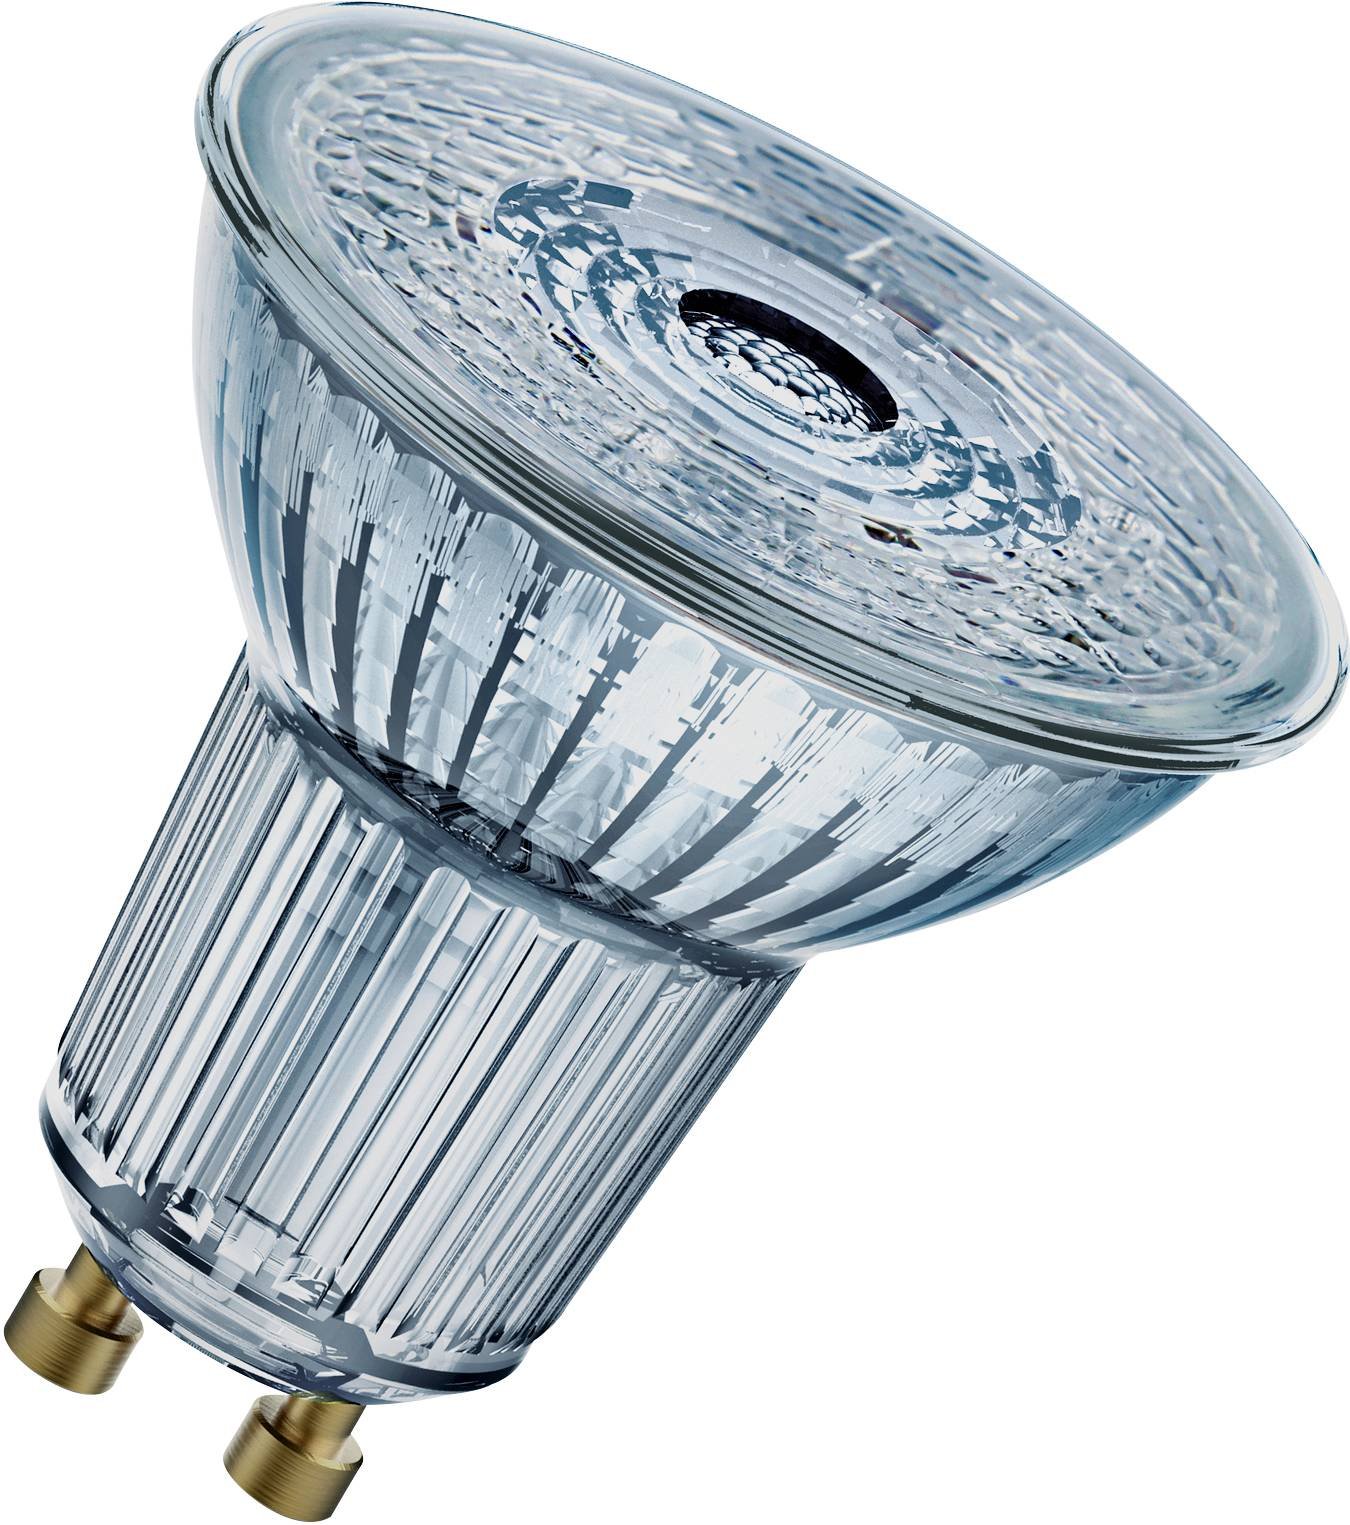 LED lemputė OSRAM, GU10, PAR16 80, reflektorinė, 8,3W, 4000K, 36°, 575 lm, dimeriuojama